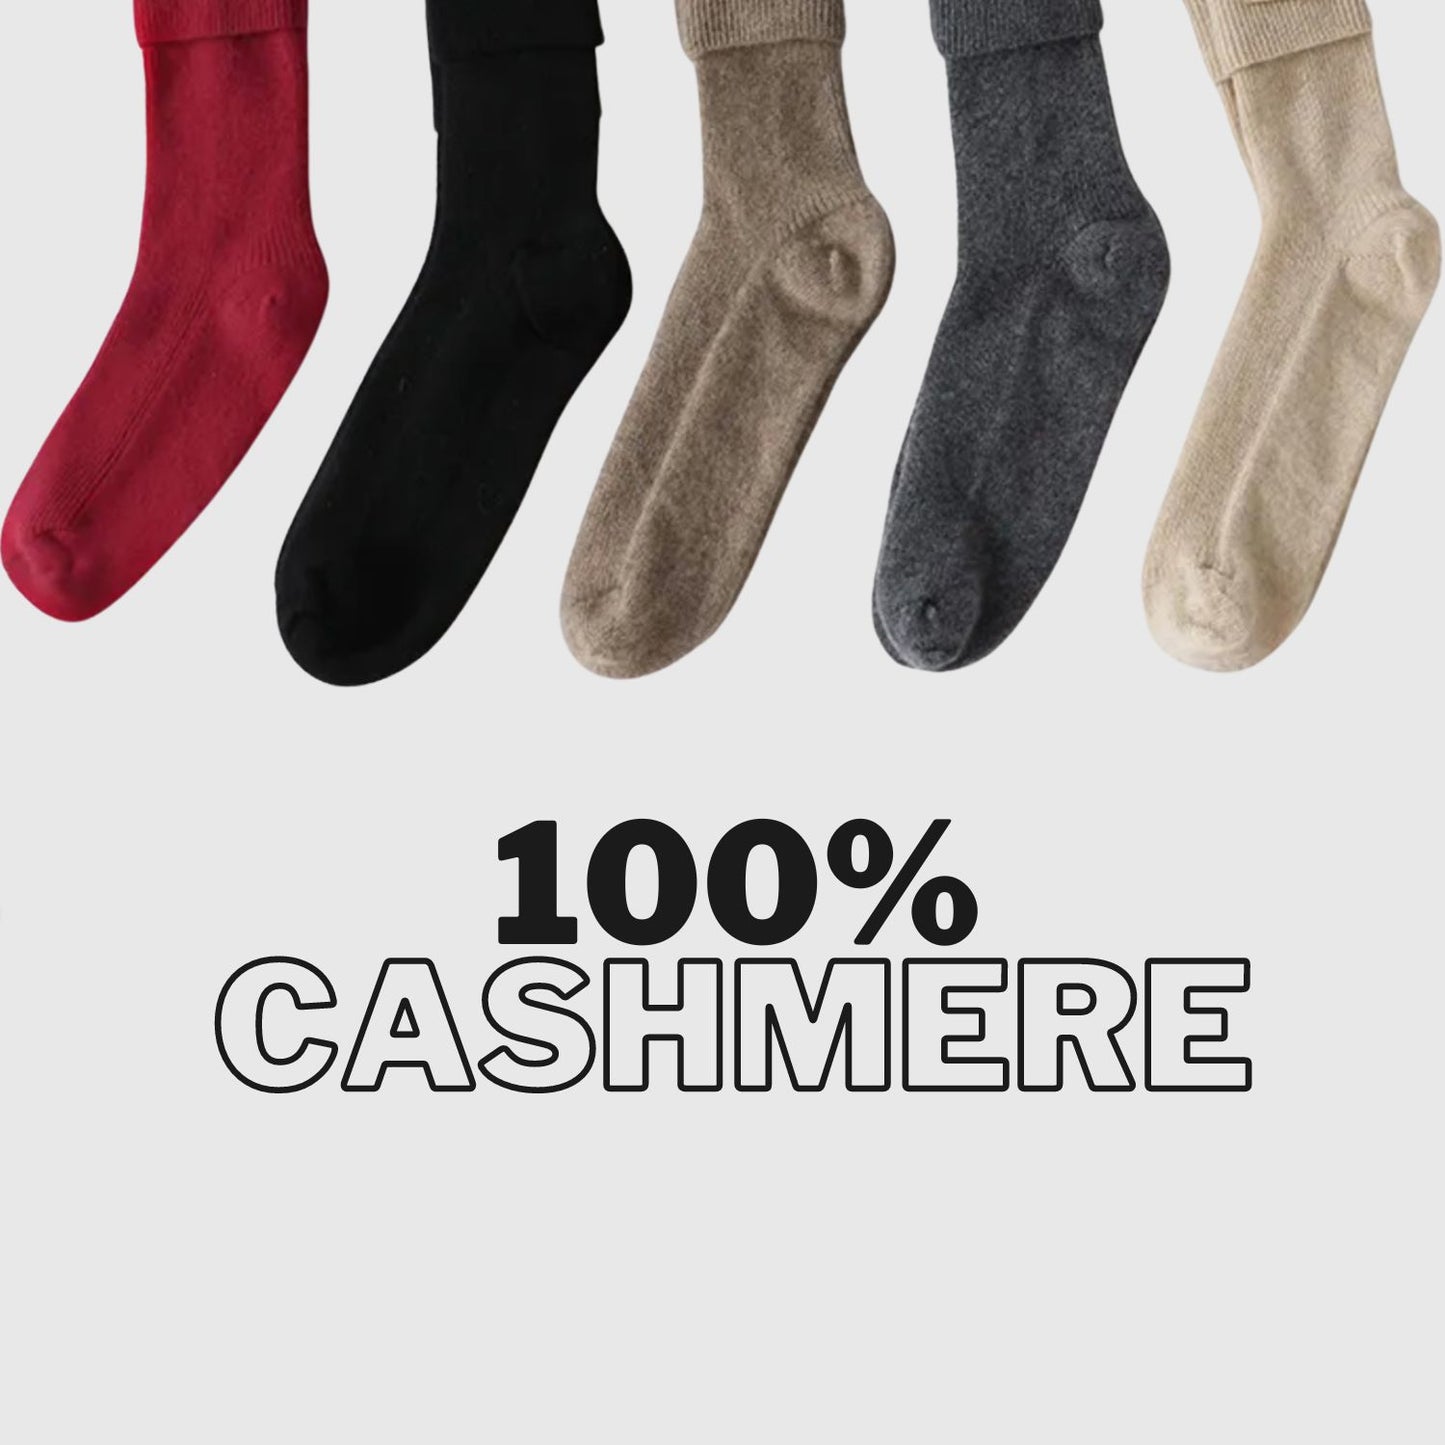 natural cashmere socks